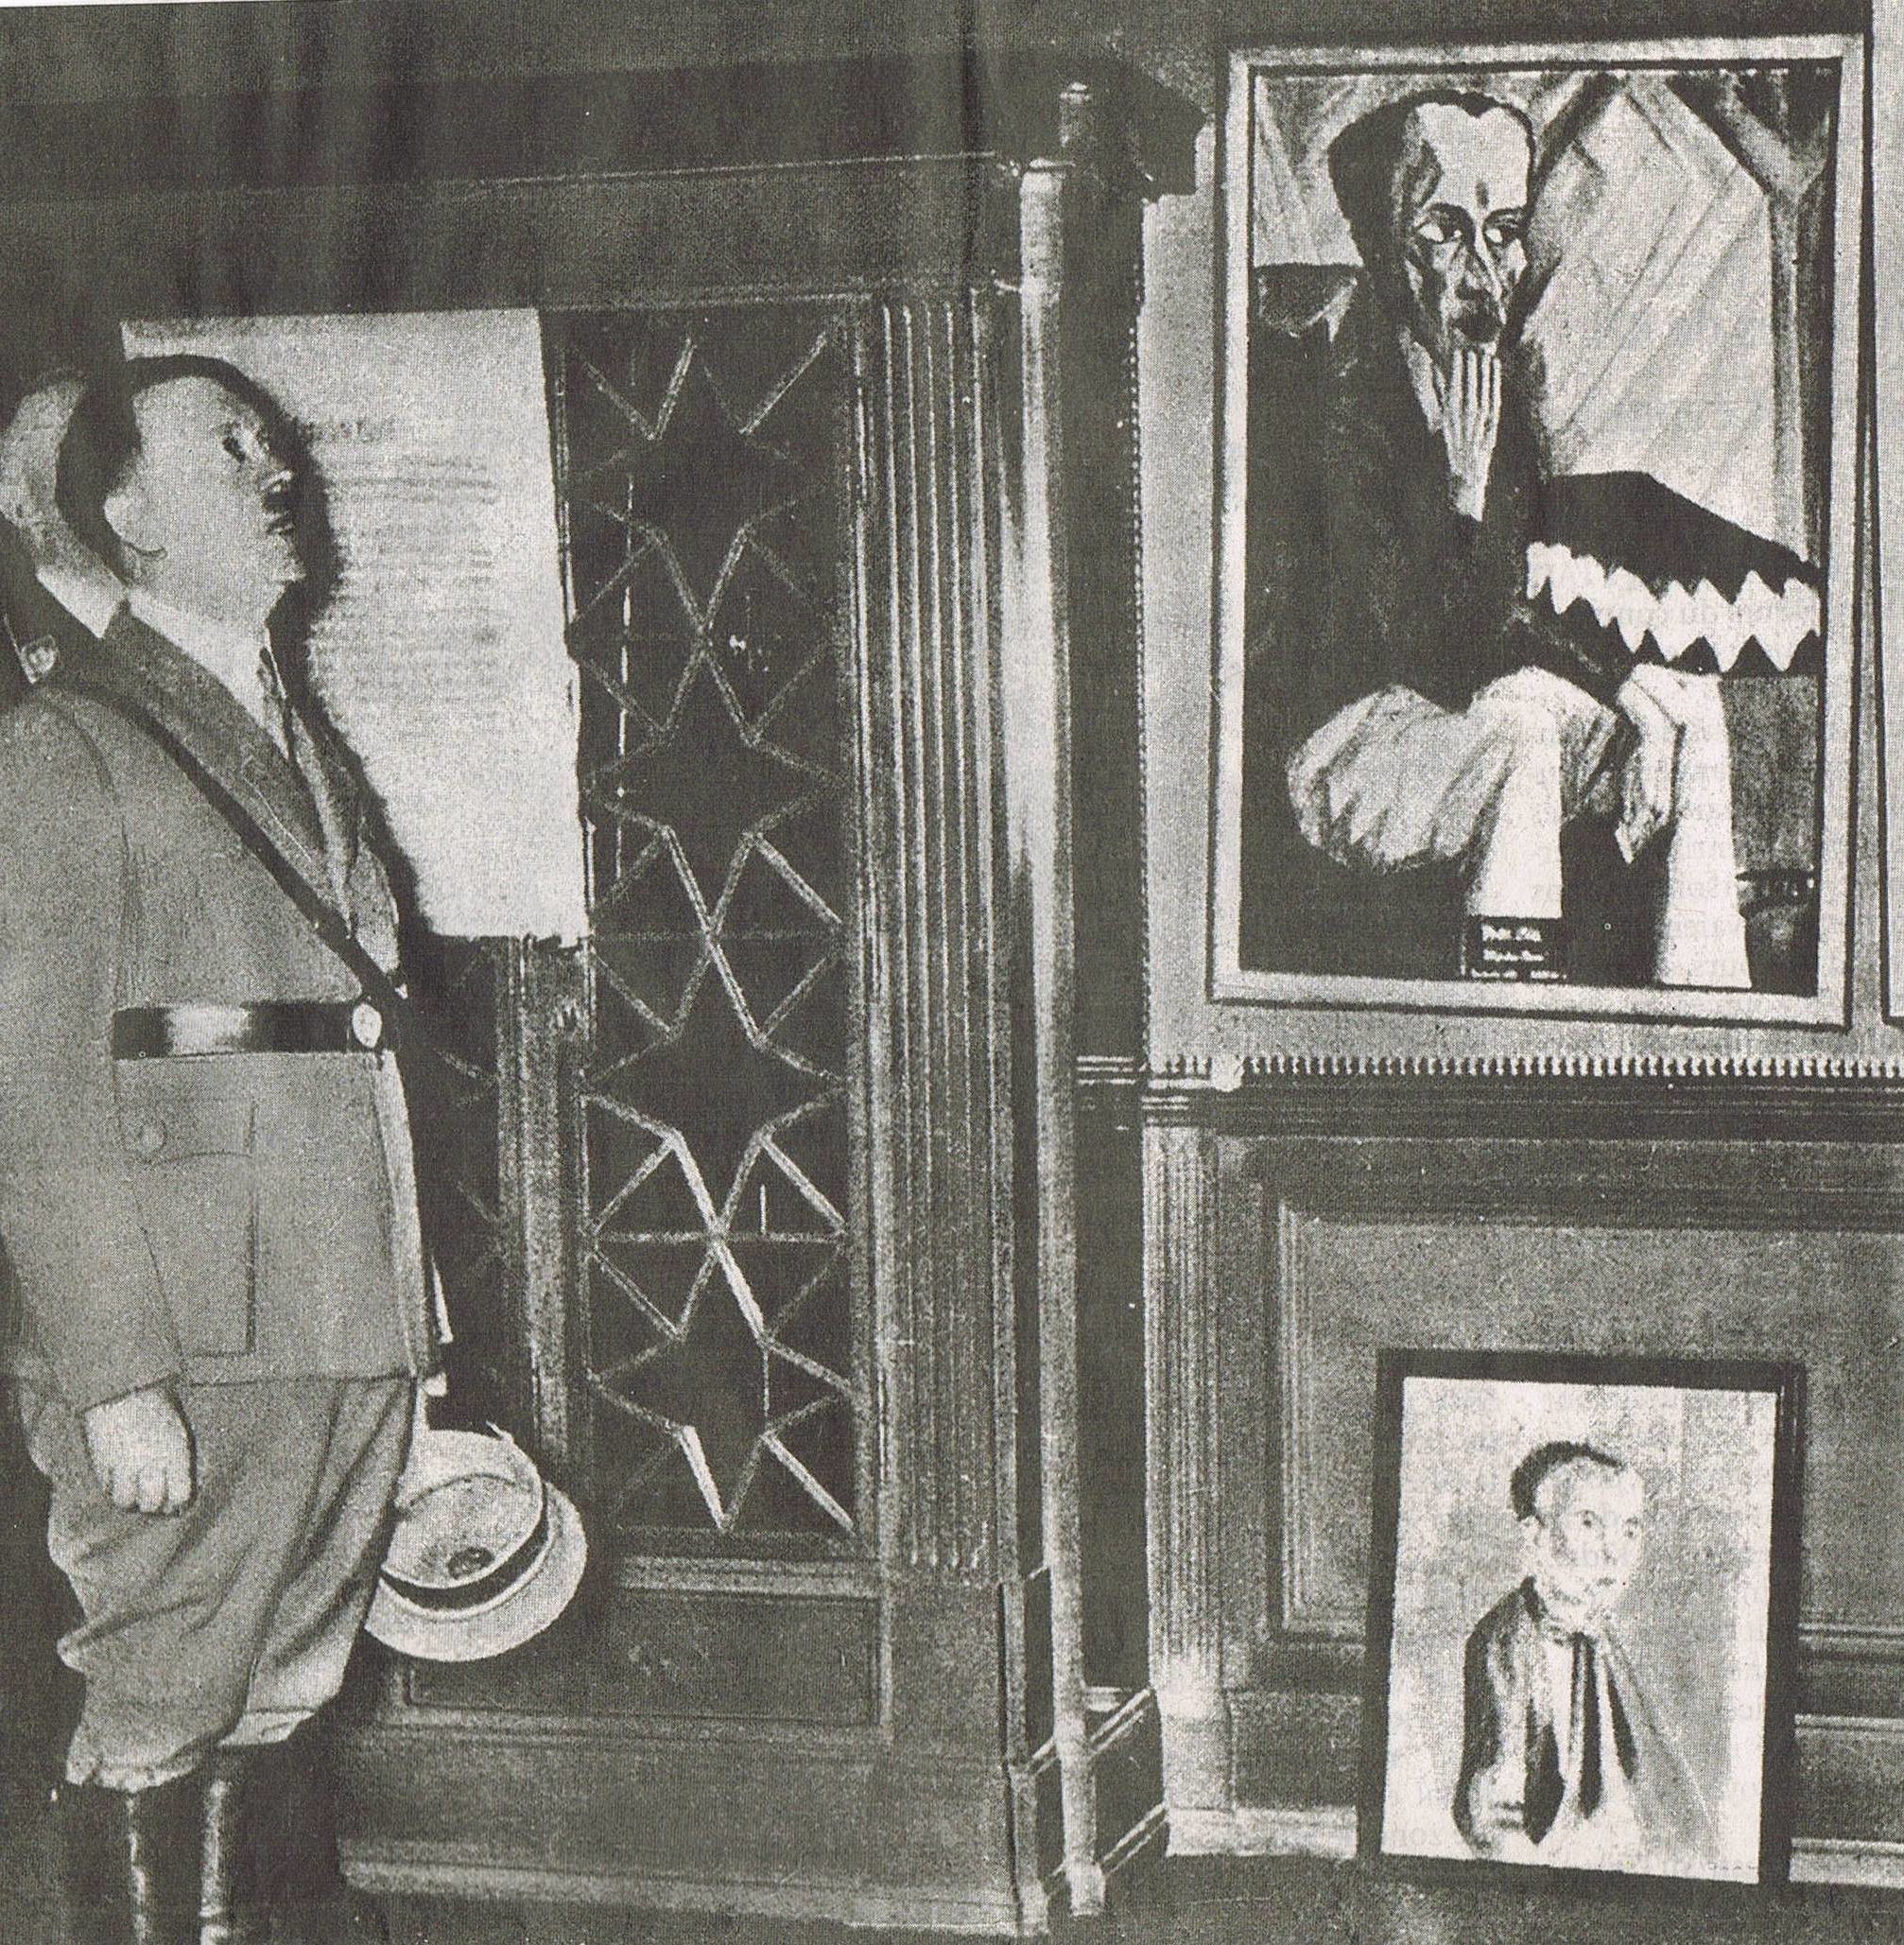 Hitler bei der Besichtigung der Ausstellung "Entartete Kunst" in den dreissiger Jahren in Dresden.